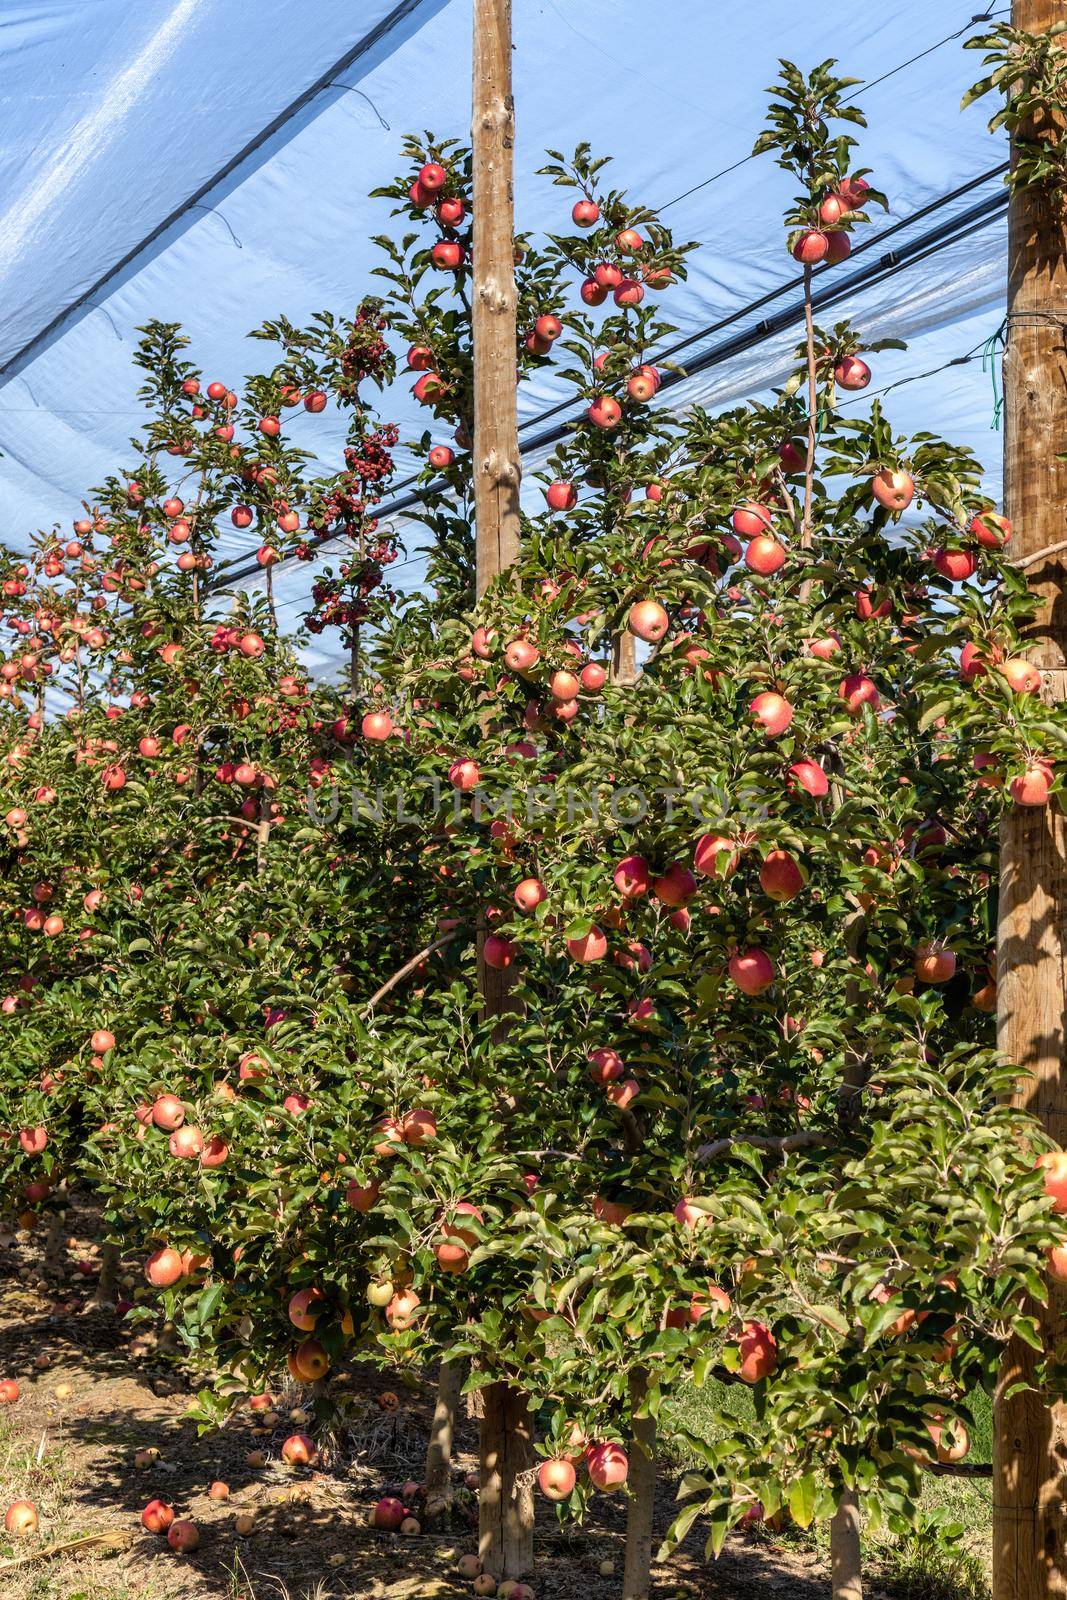 Abundant apple harvest on a Spanish apple orchard